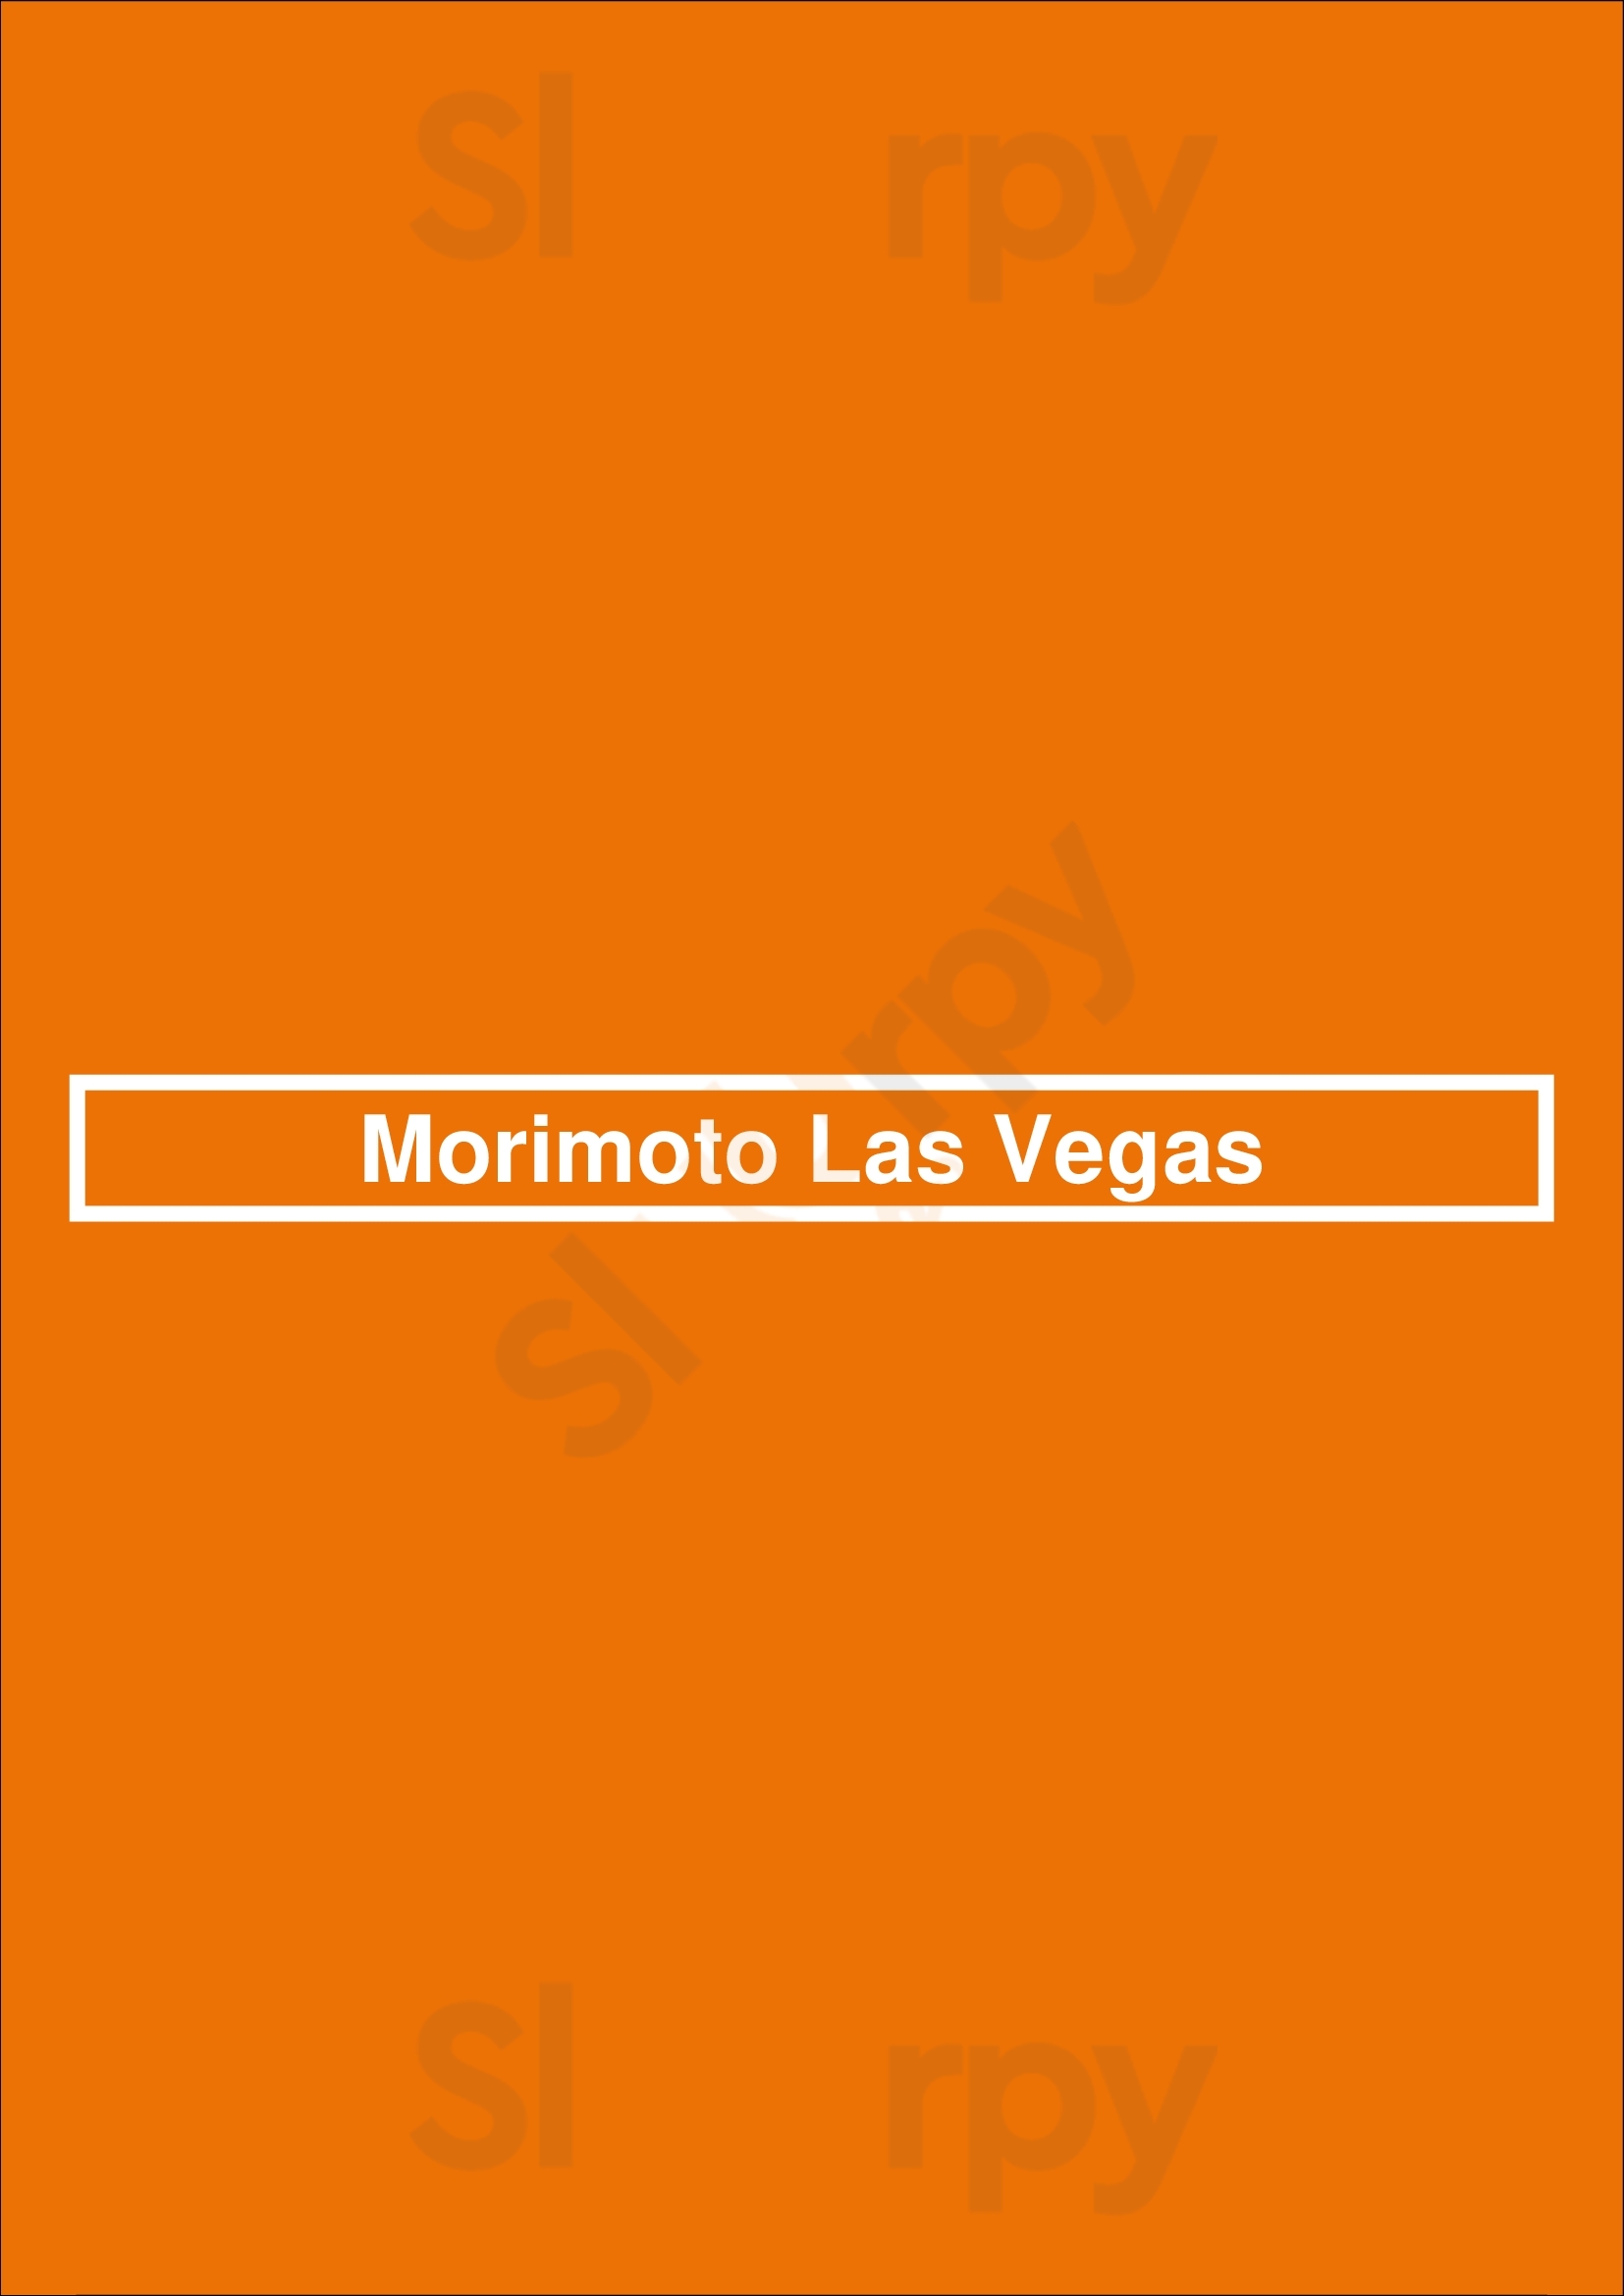 Morimoto Las Vegas Las Vegas Menu - 1